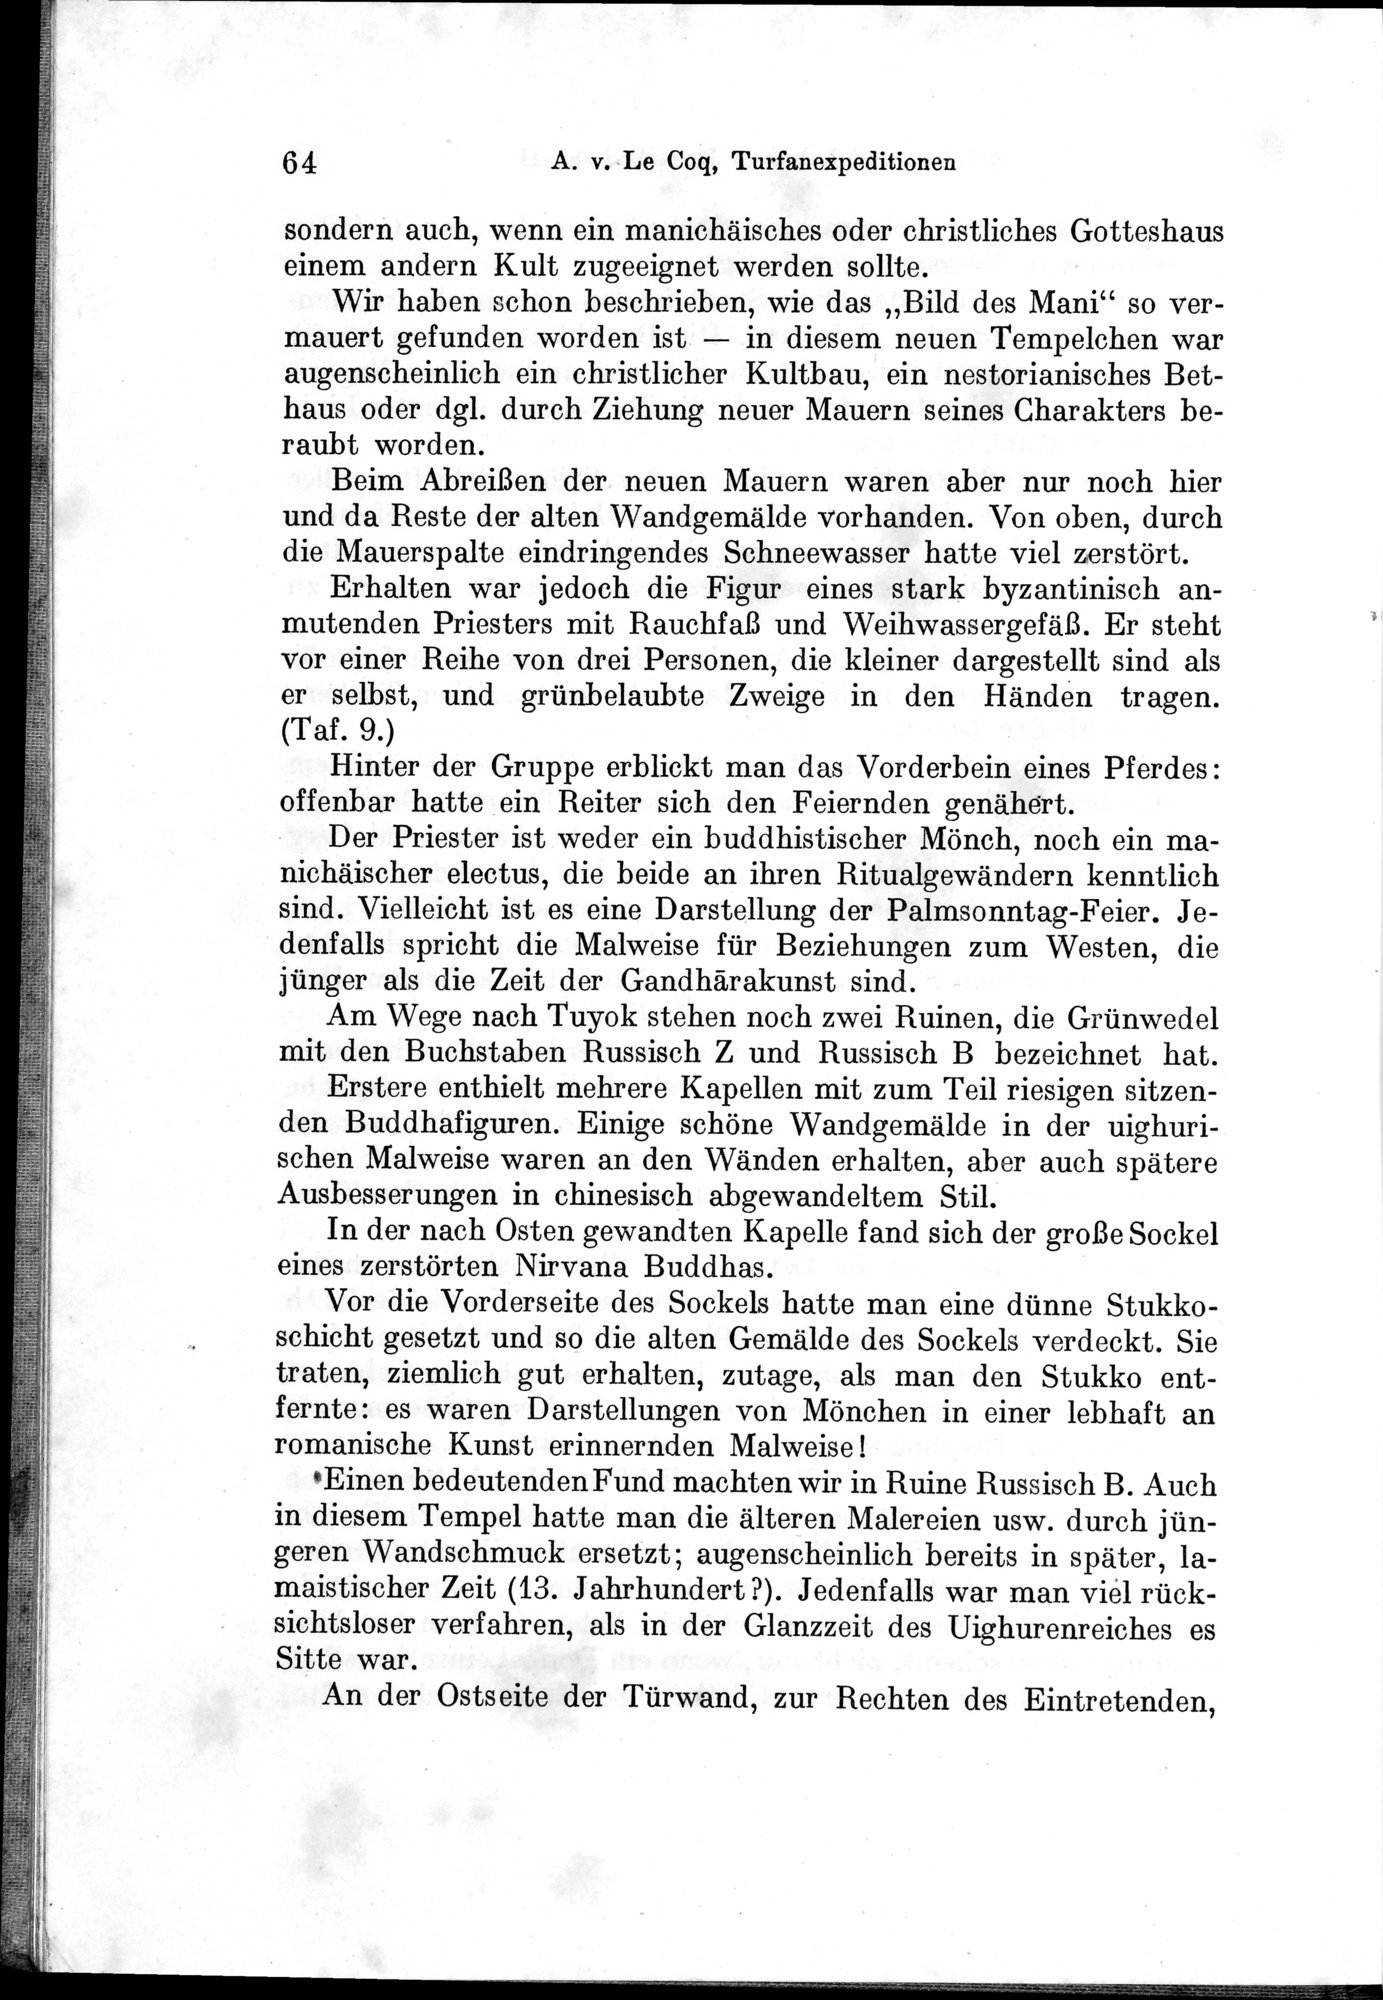 Auf Hellas Spuren in Ostturkistan : vol.1 / Page 96 (Grayscale High Resolution Image)